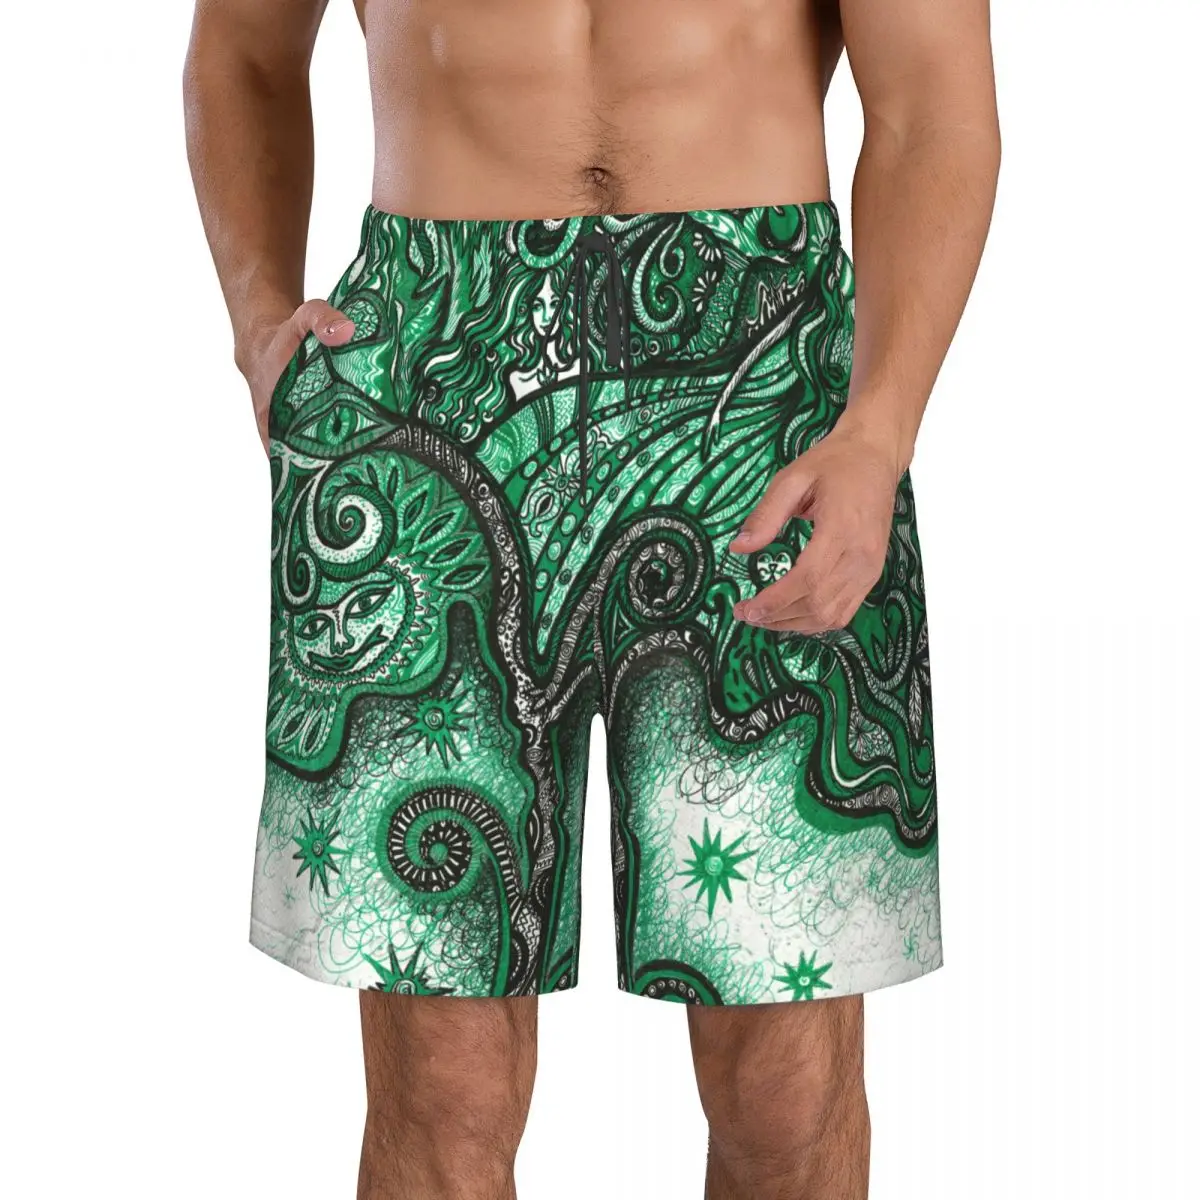 

Быстросохнущие плавательные шорты для мужчин, купальники, мужской купальник, плавки, летняя пляжная одежда для купания, волшебное дерево